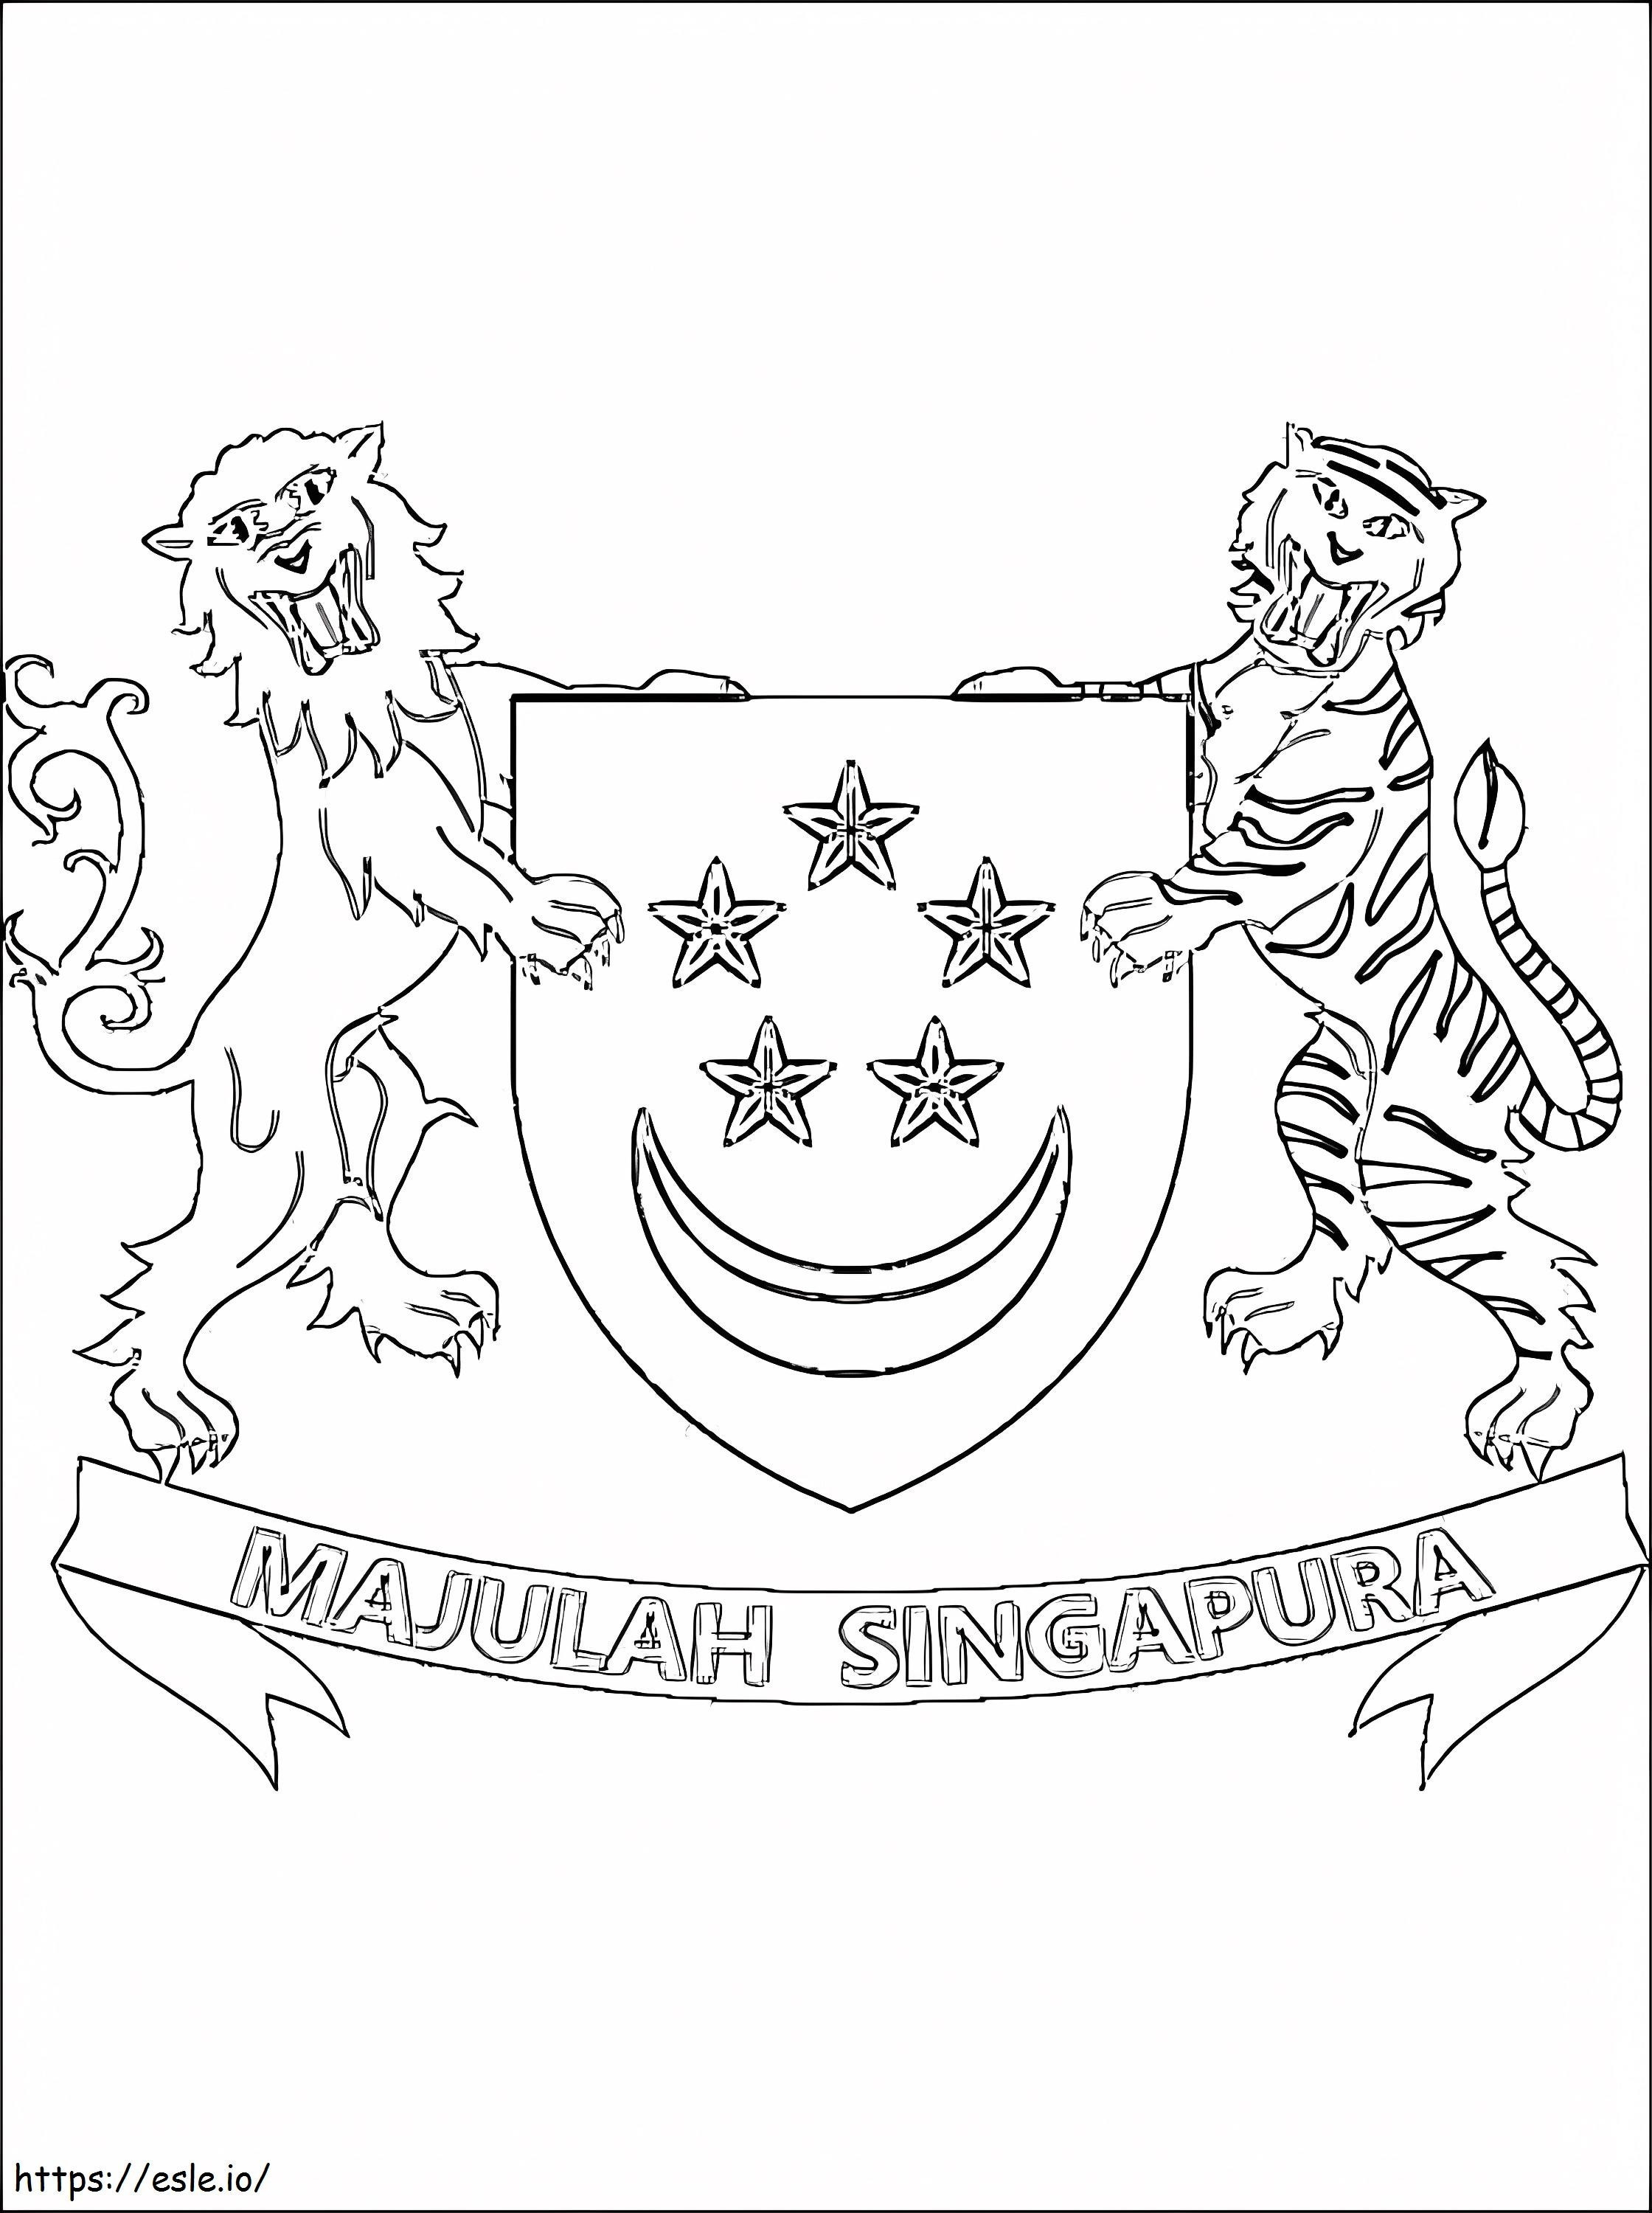 Wappen von Singapur ausmalbilder